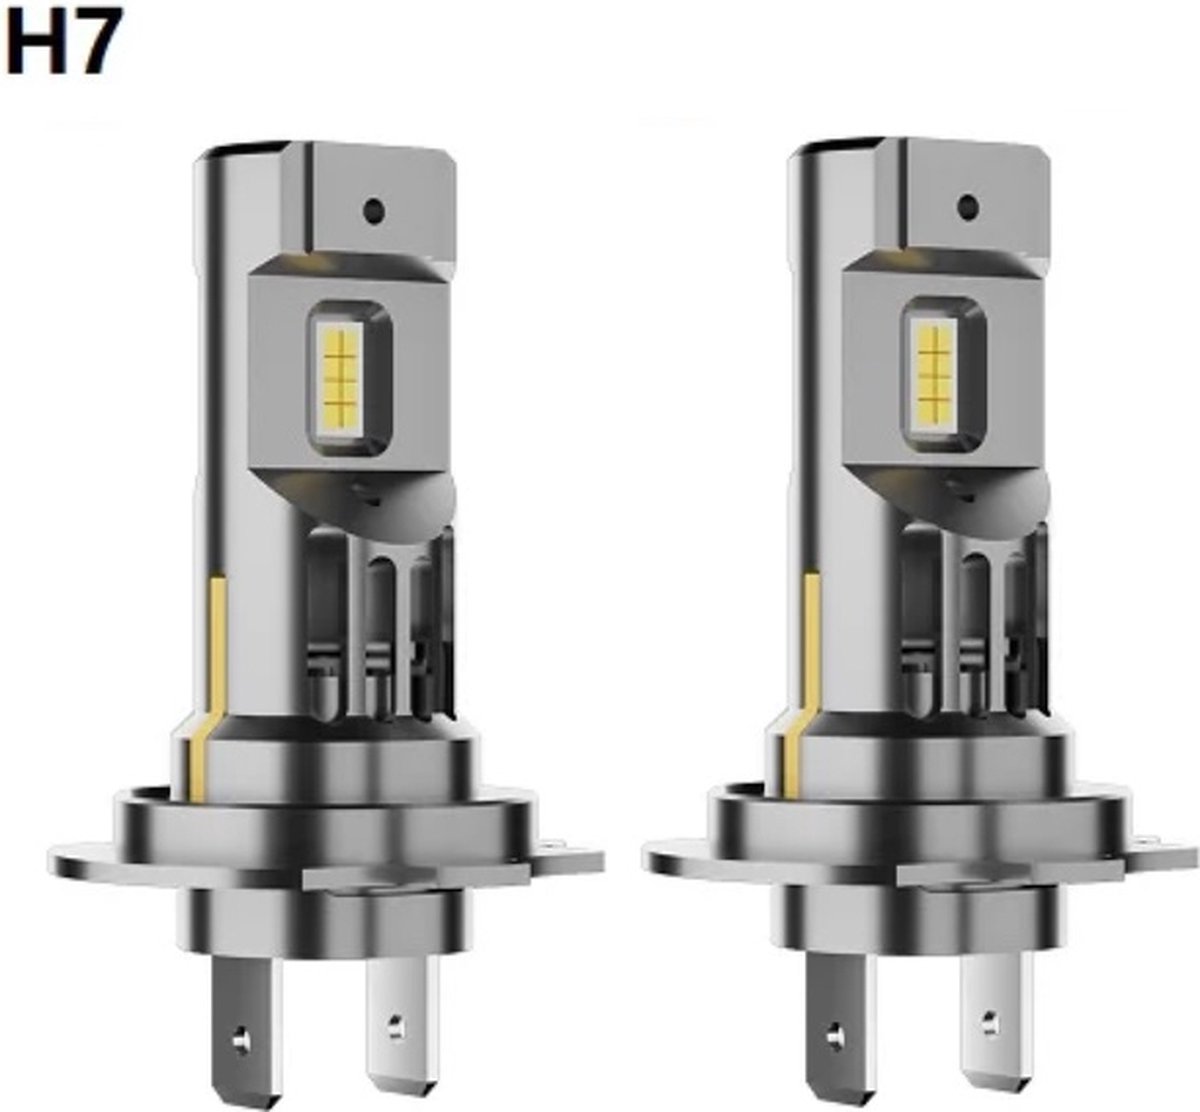 TLVX H7 55Watt Pro Line Perfect Fit LED lampen – 6000K Wit Licht (set 2 stuks), 36000 Lumen Hoge Lichtopbrengst – CANBUS - Auto - Scooter - Motor - Dimlicht - Grootlicht – Mistlicht - Koplampen - Autolamp - Autolampen 12V